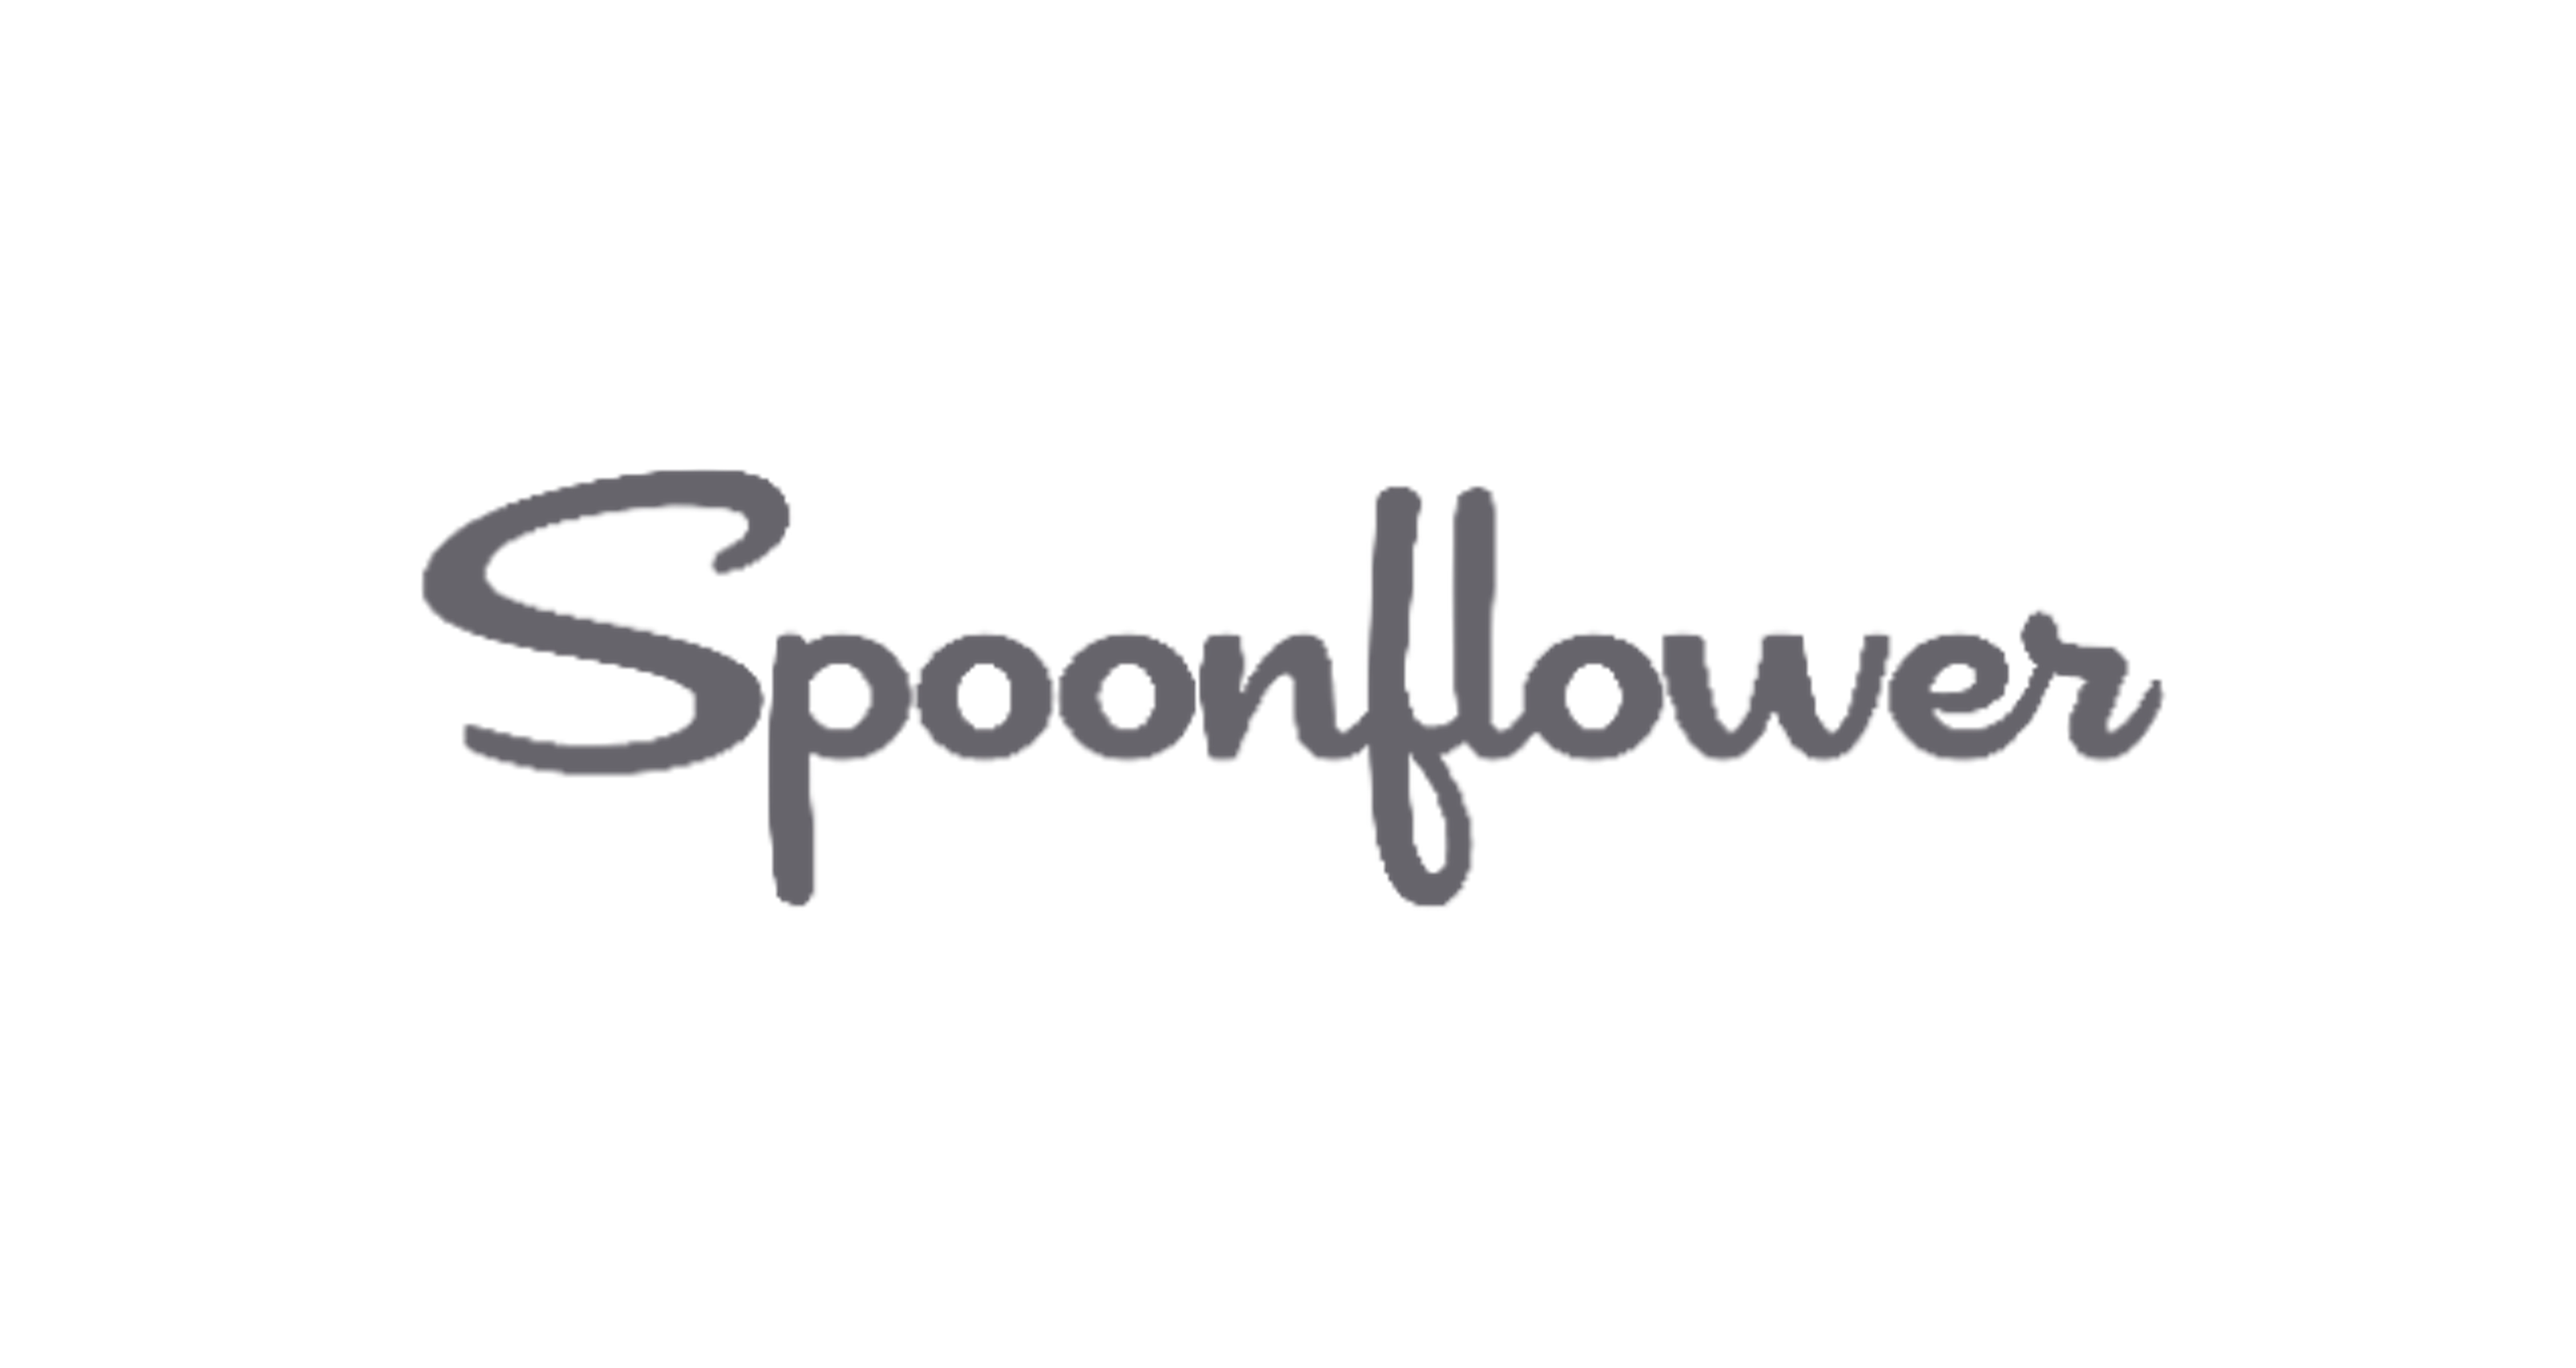 Spoonflower's logo.